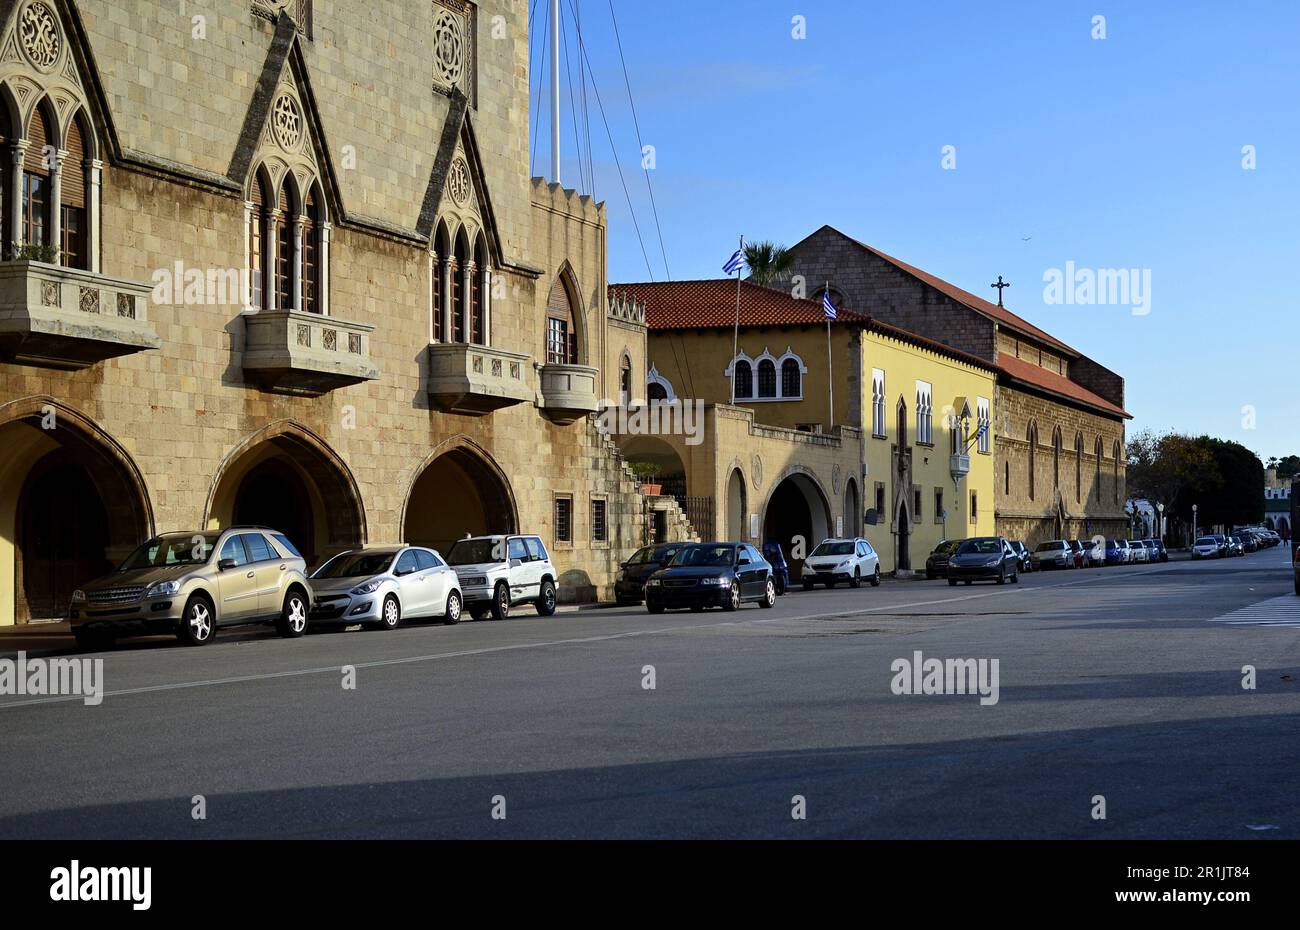 La strada centrale con auto parcheggiate lungo la strada, vicino agli edifici di architettura italiana sull'isola di Rodi, Greece.Mandraki District Foto Stock